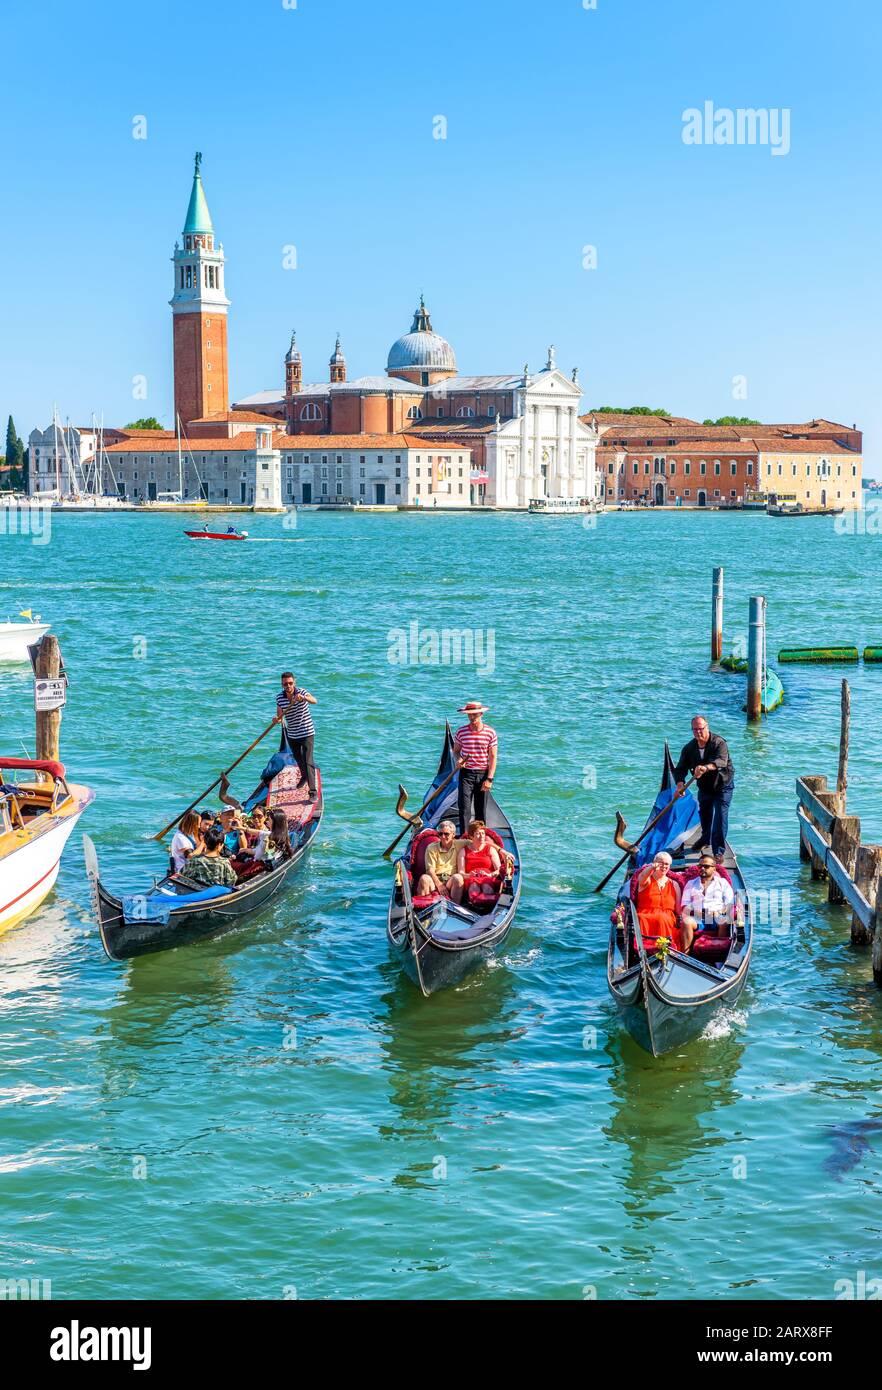 Venezia - 18 maggio 2017: Le gondole navigano contro l'isola di San Giorgio a Venezia. La gondola è il mezzo di trasporto turistico più attraente di Venezia. Conc Foto Stock